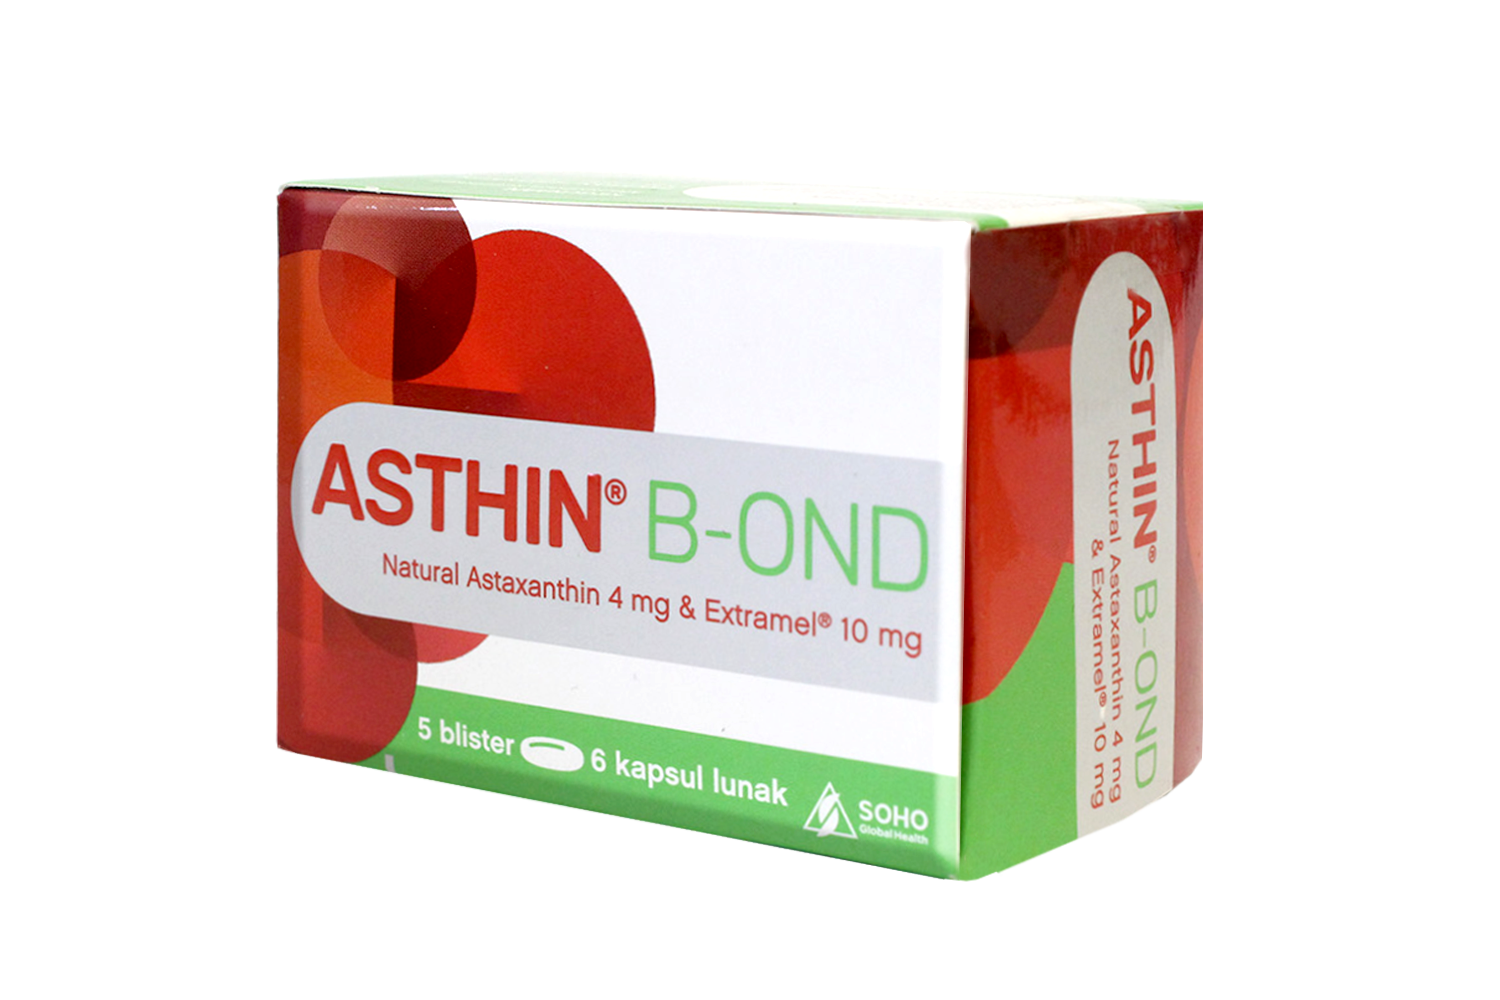 Asthin B-Ond